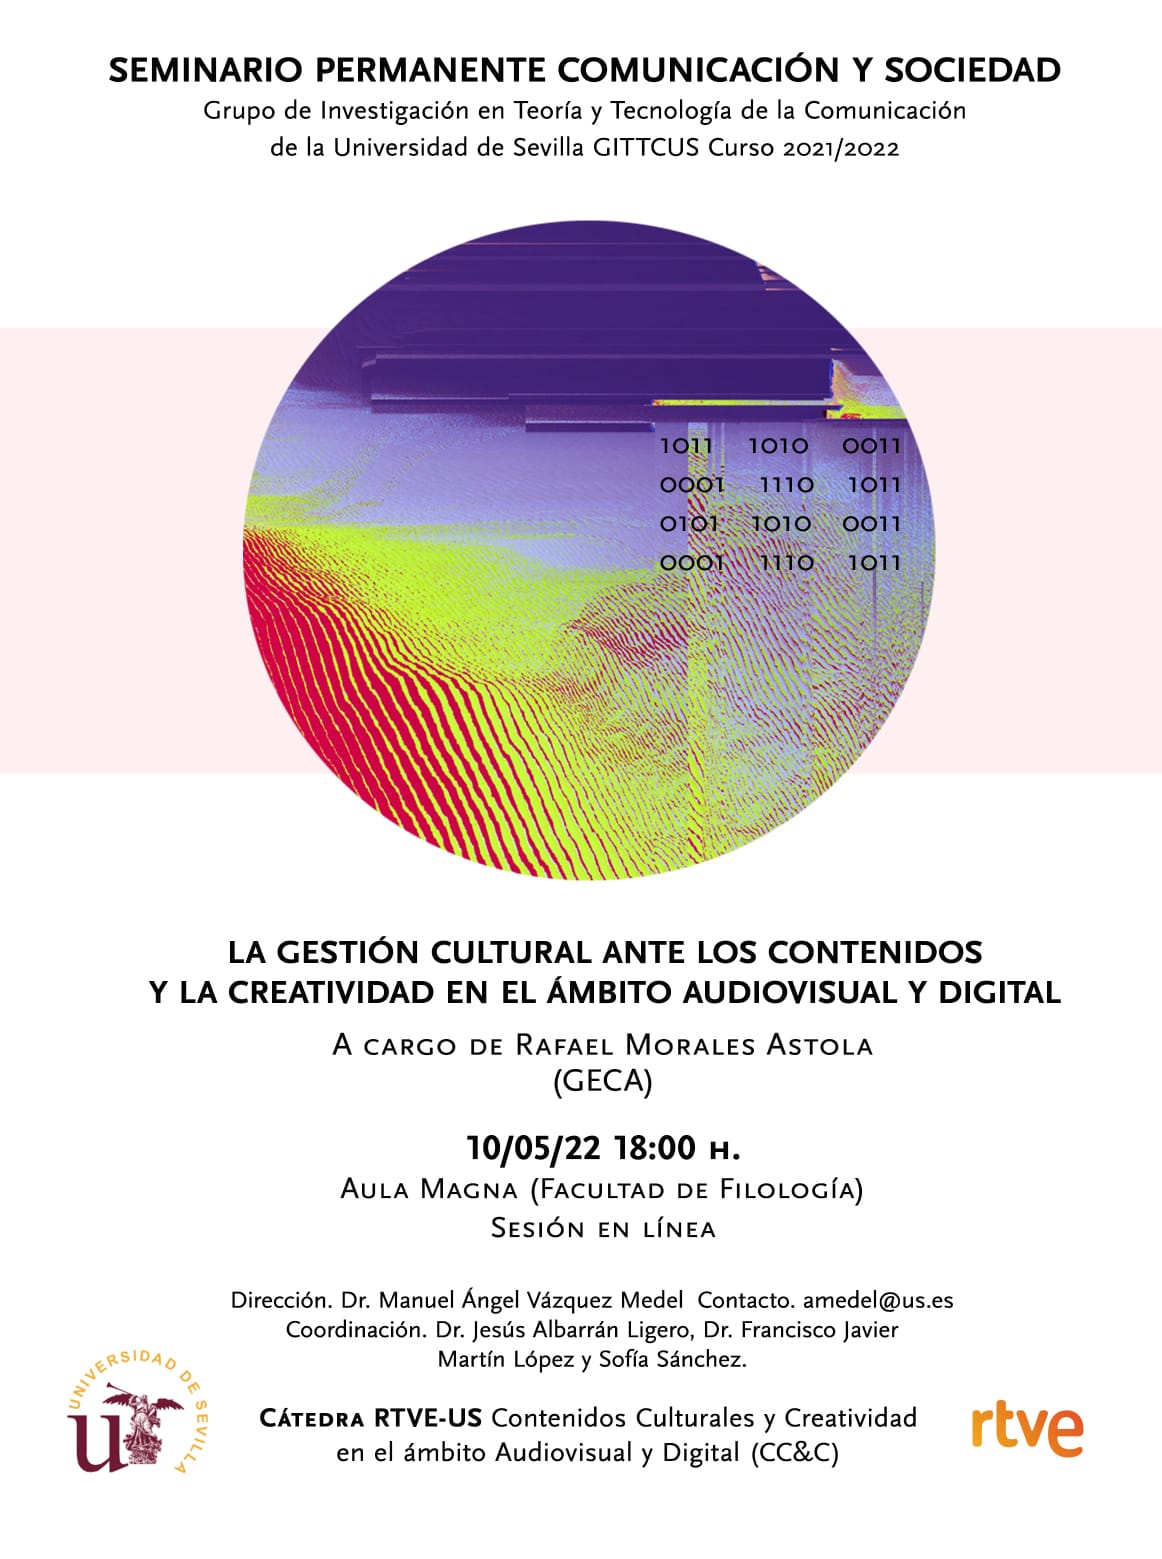 Seminario Comunicación y Sociedad y firma de convenio con la Cátedra RTVE-US en Contenidos Culturales y Creatividad